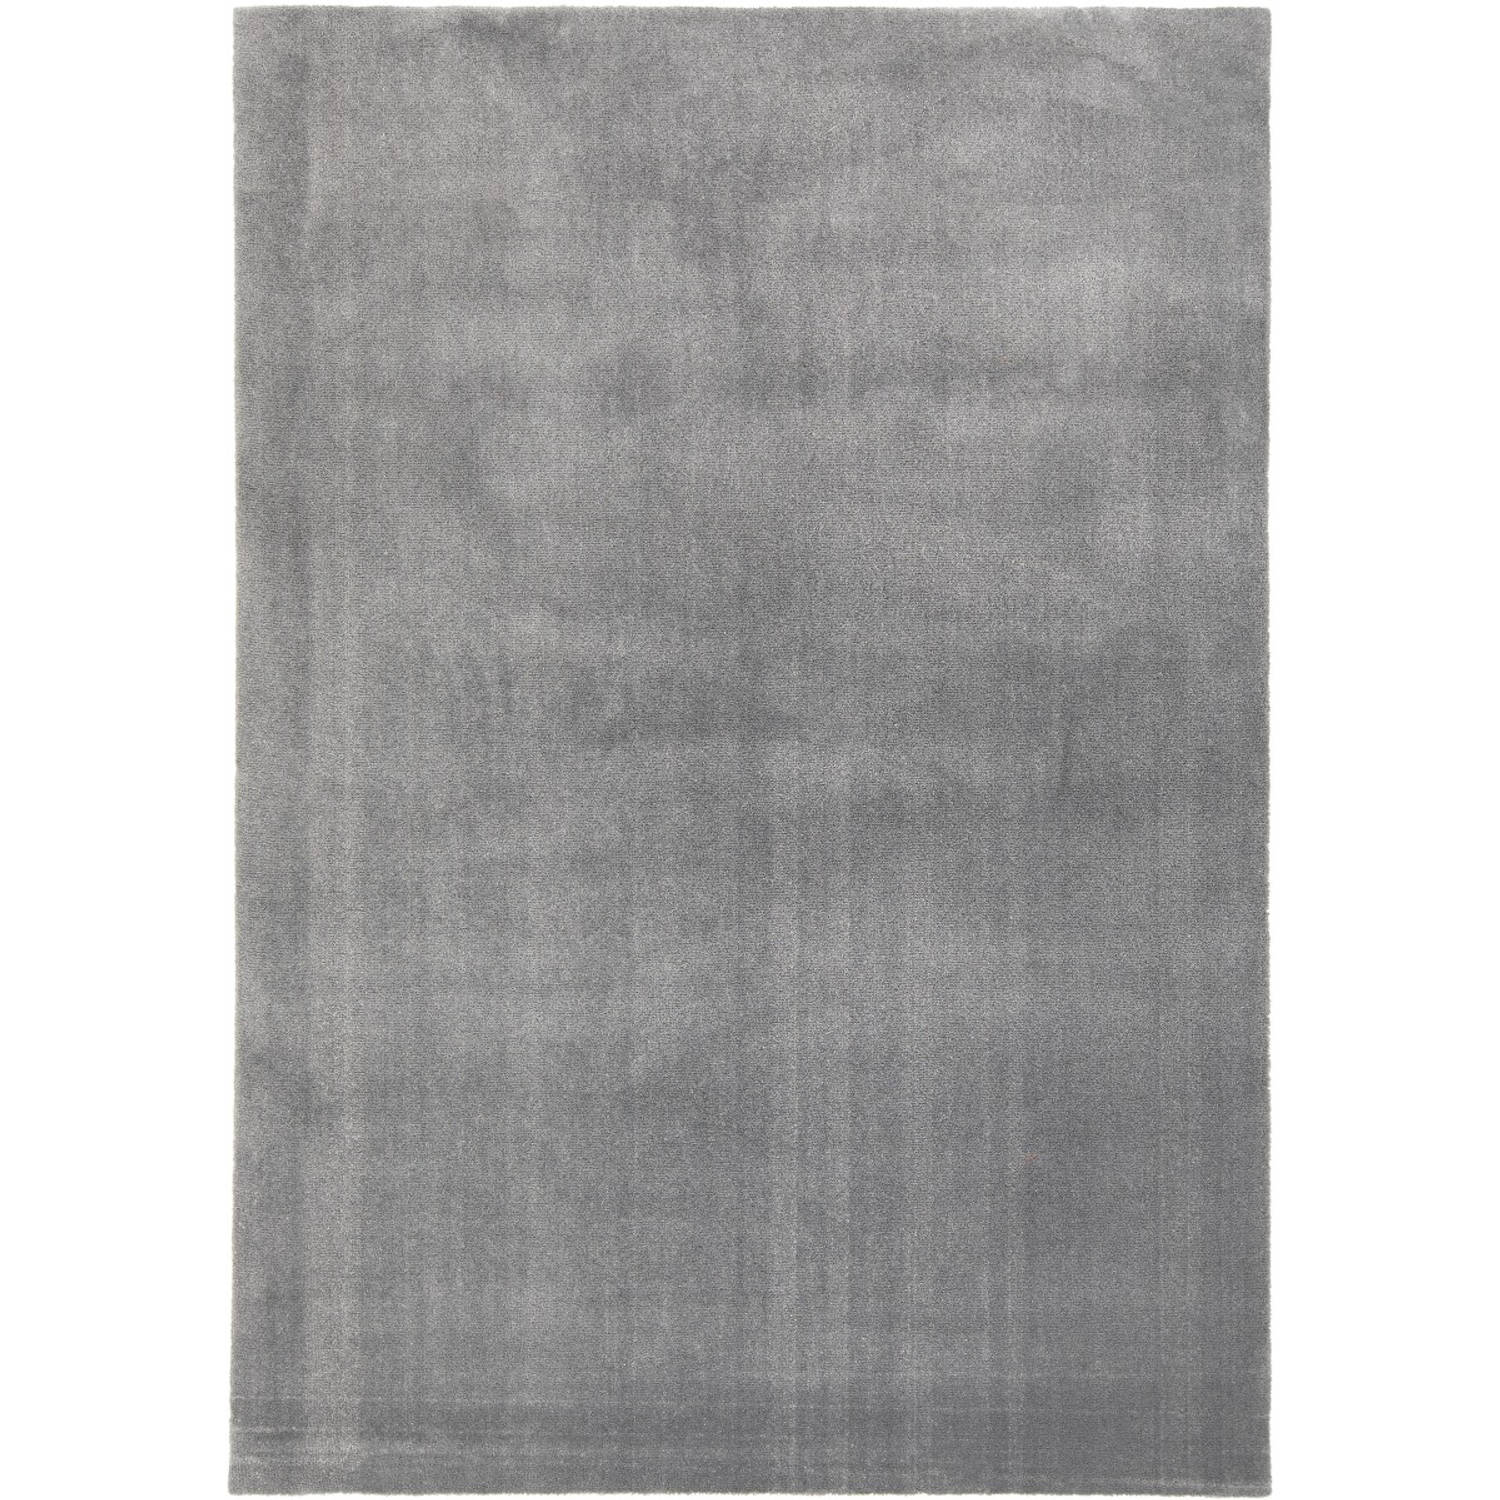 Vloerkleed Glymm Grijs Wasbaar - Interieur05 Grijs/Antraciet - Polyester - 140 x 200 cm - (S)